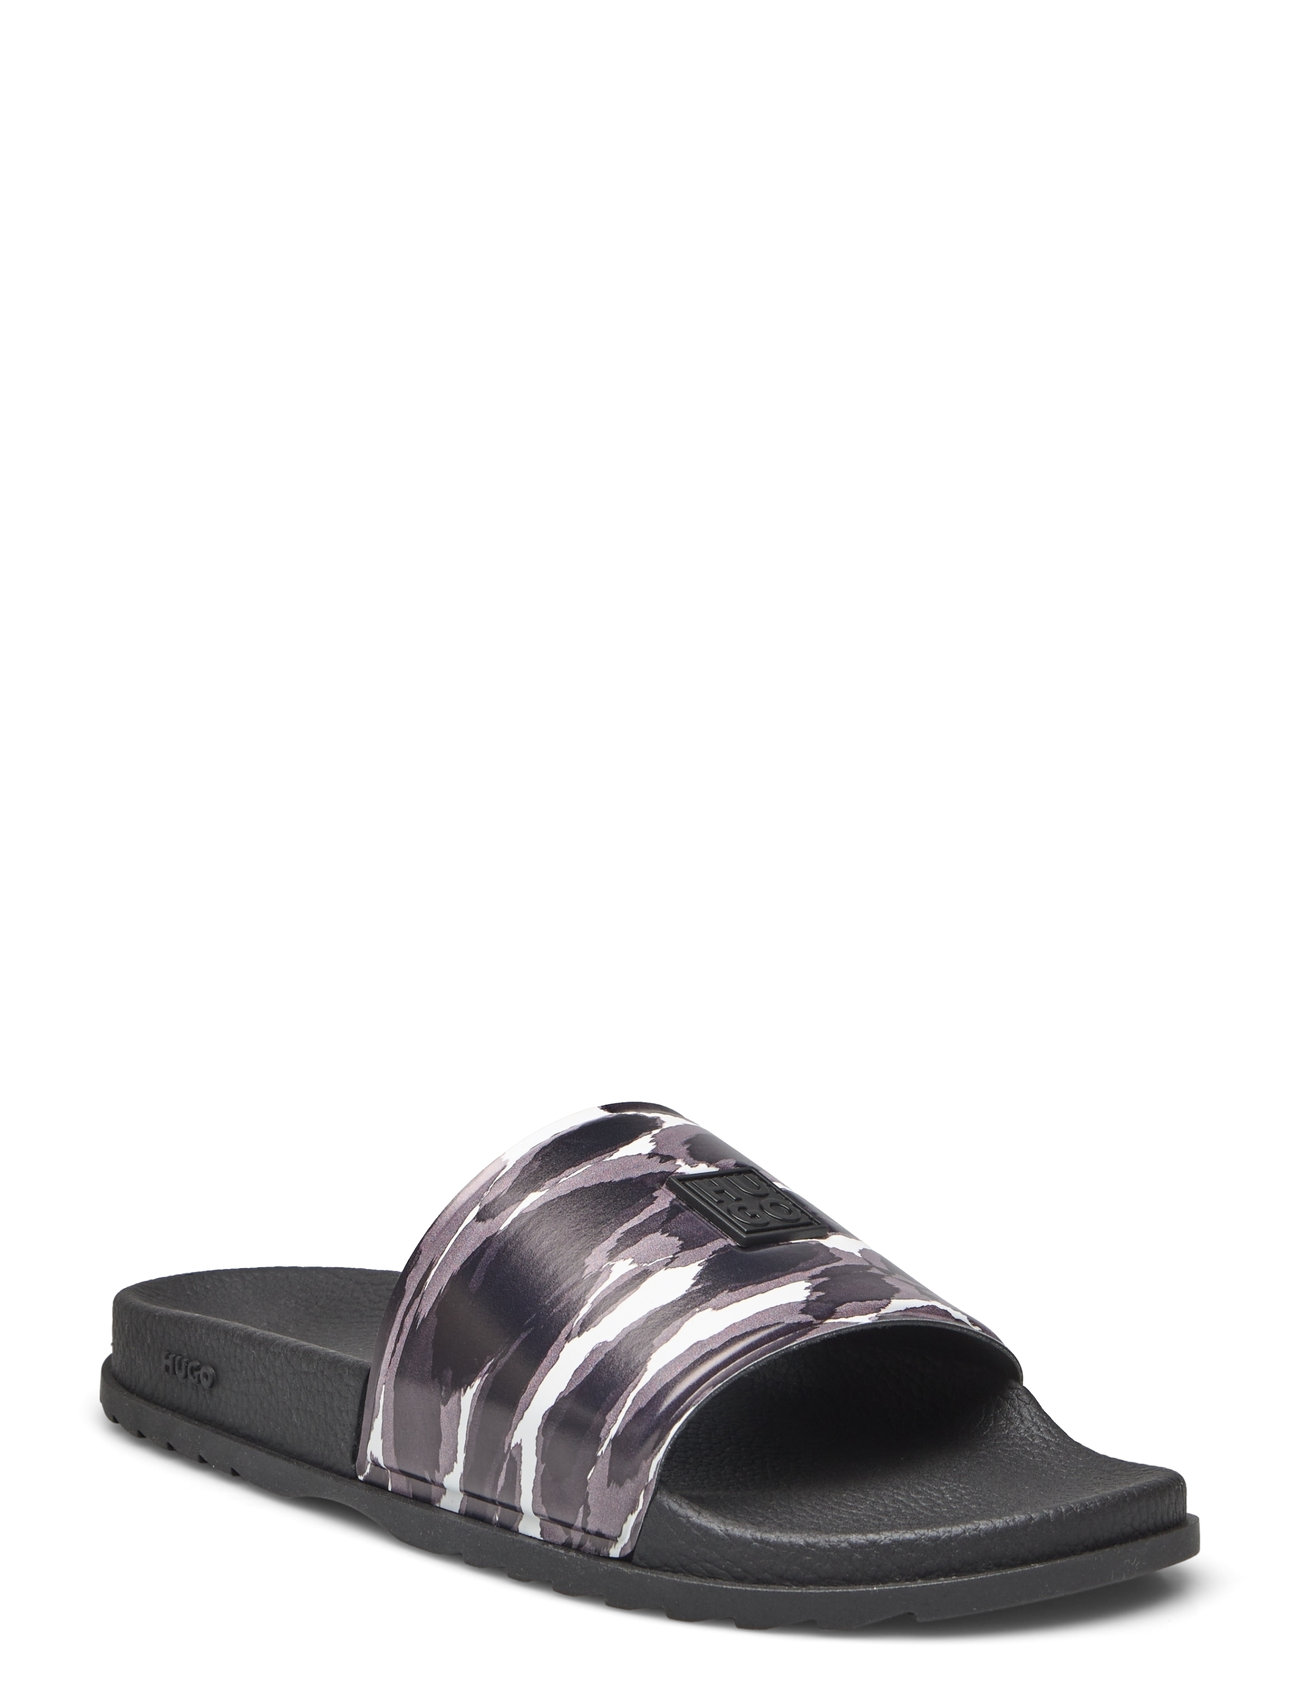 Match_It_Slid_Prcm Designers Summer Shoes Sandals Pool Sliders Black HUGO